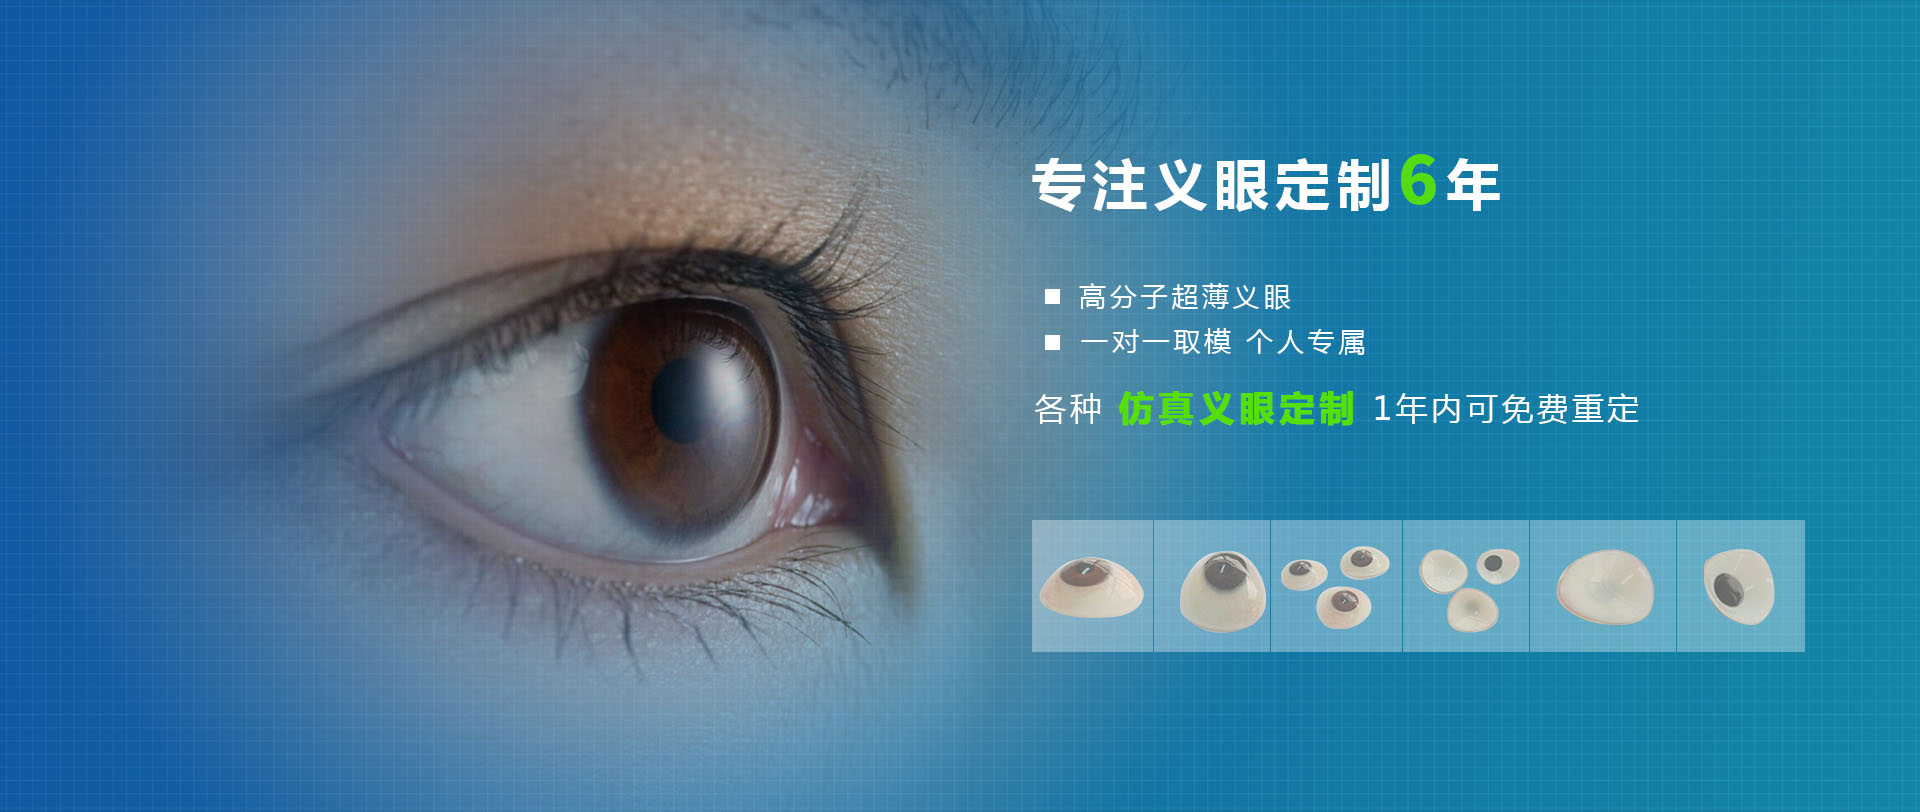 小姑娘手术后制作义眼片 - 客户案例 - 重庆美康莱医疗器械有限公司